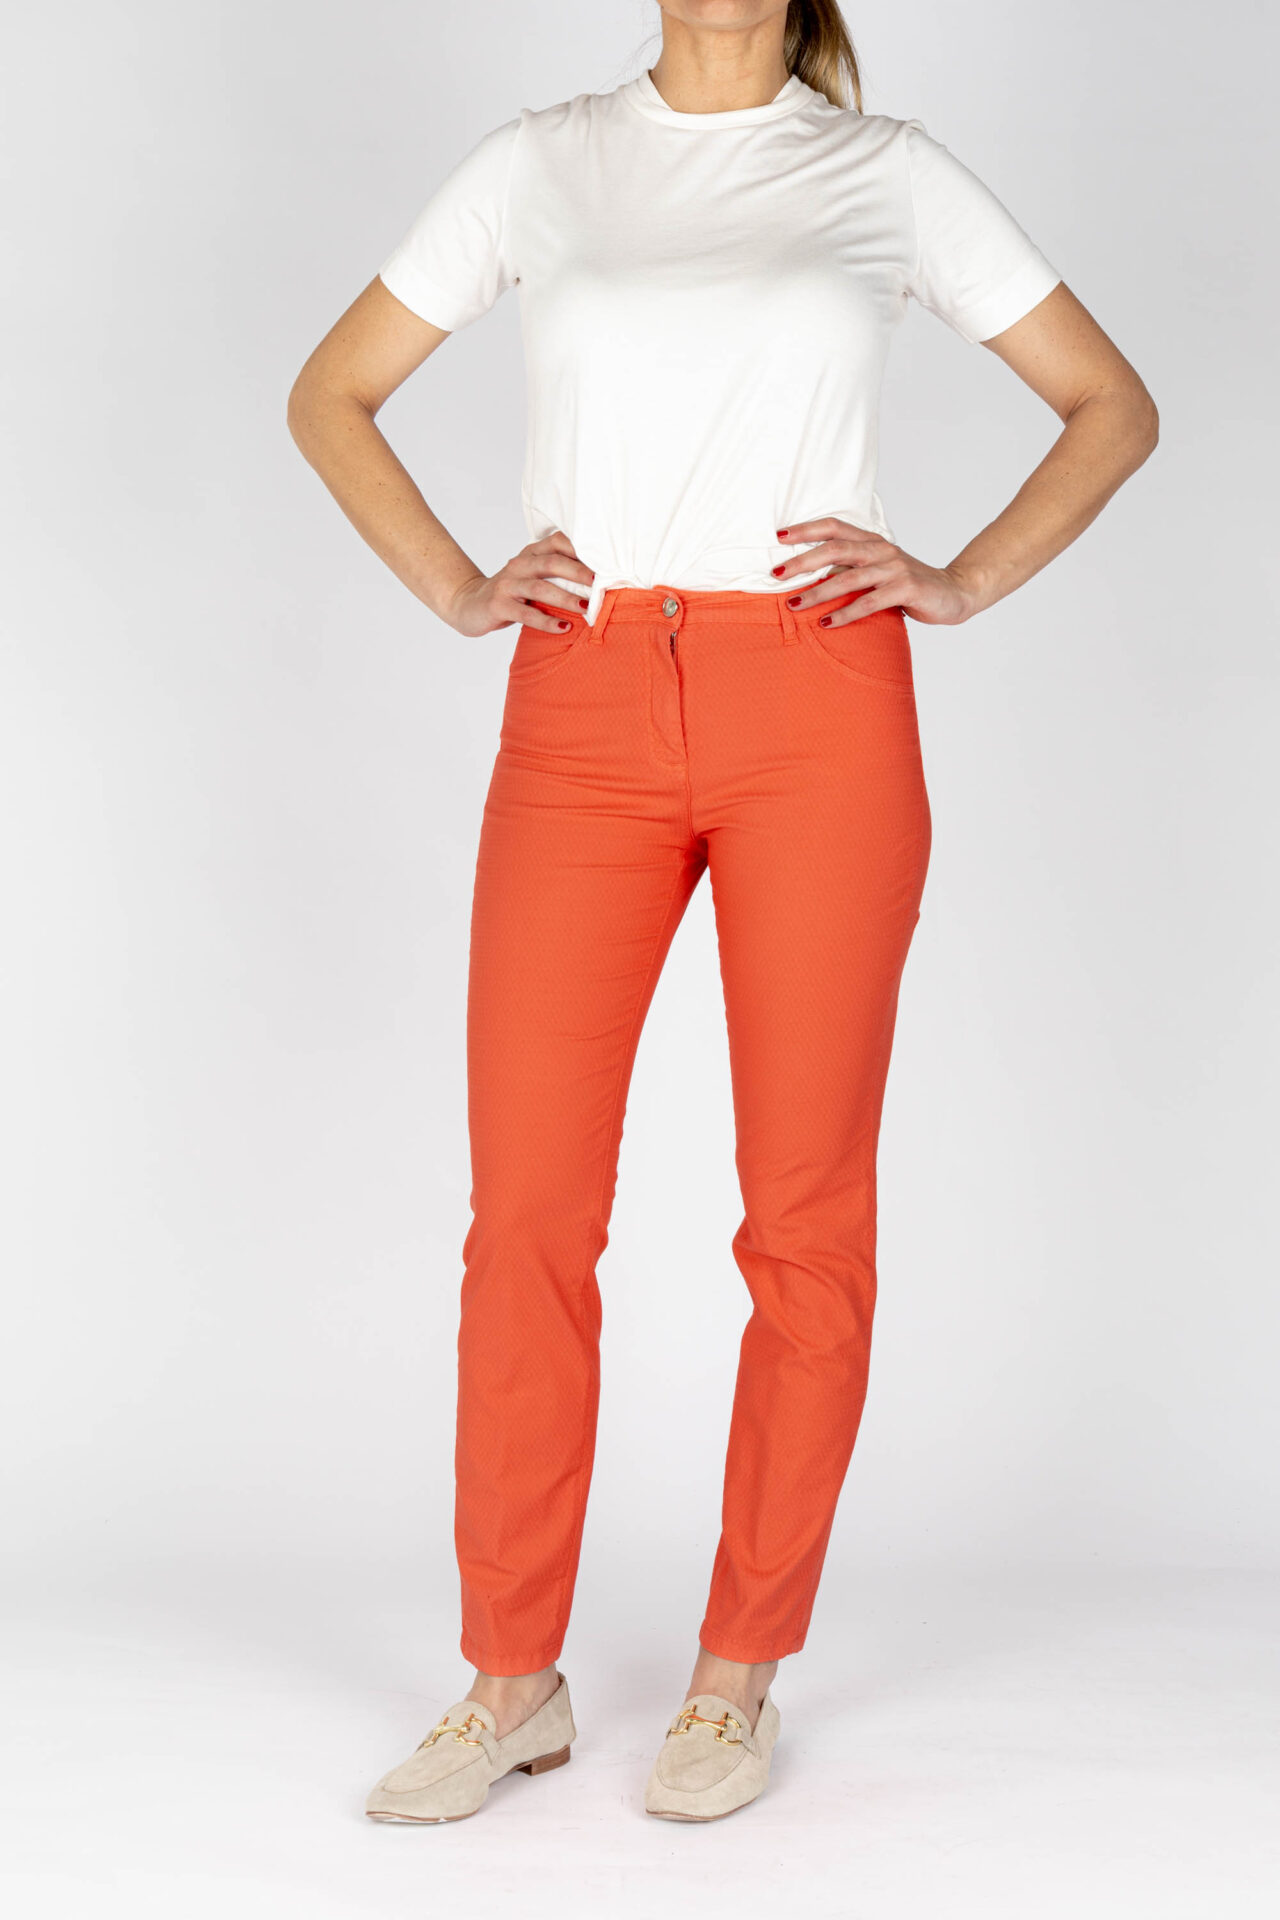 Pantaloni jeans colore corallo tessuto cotone armaturato